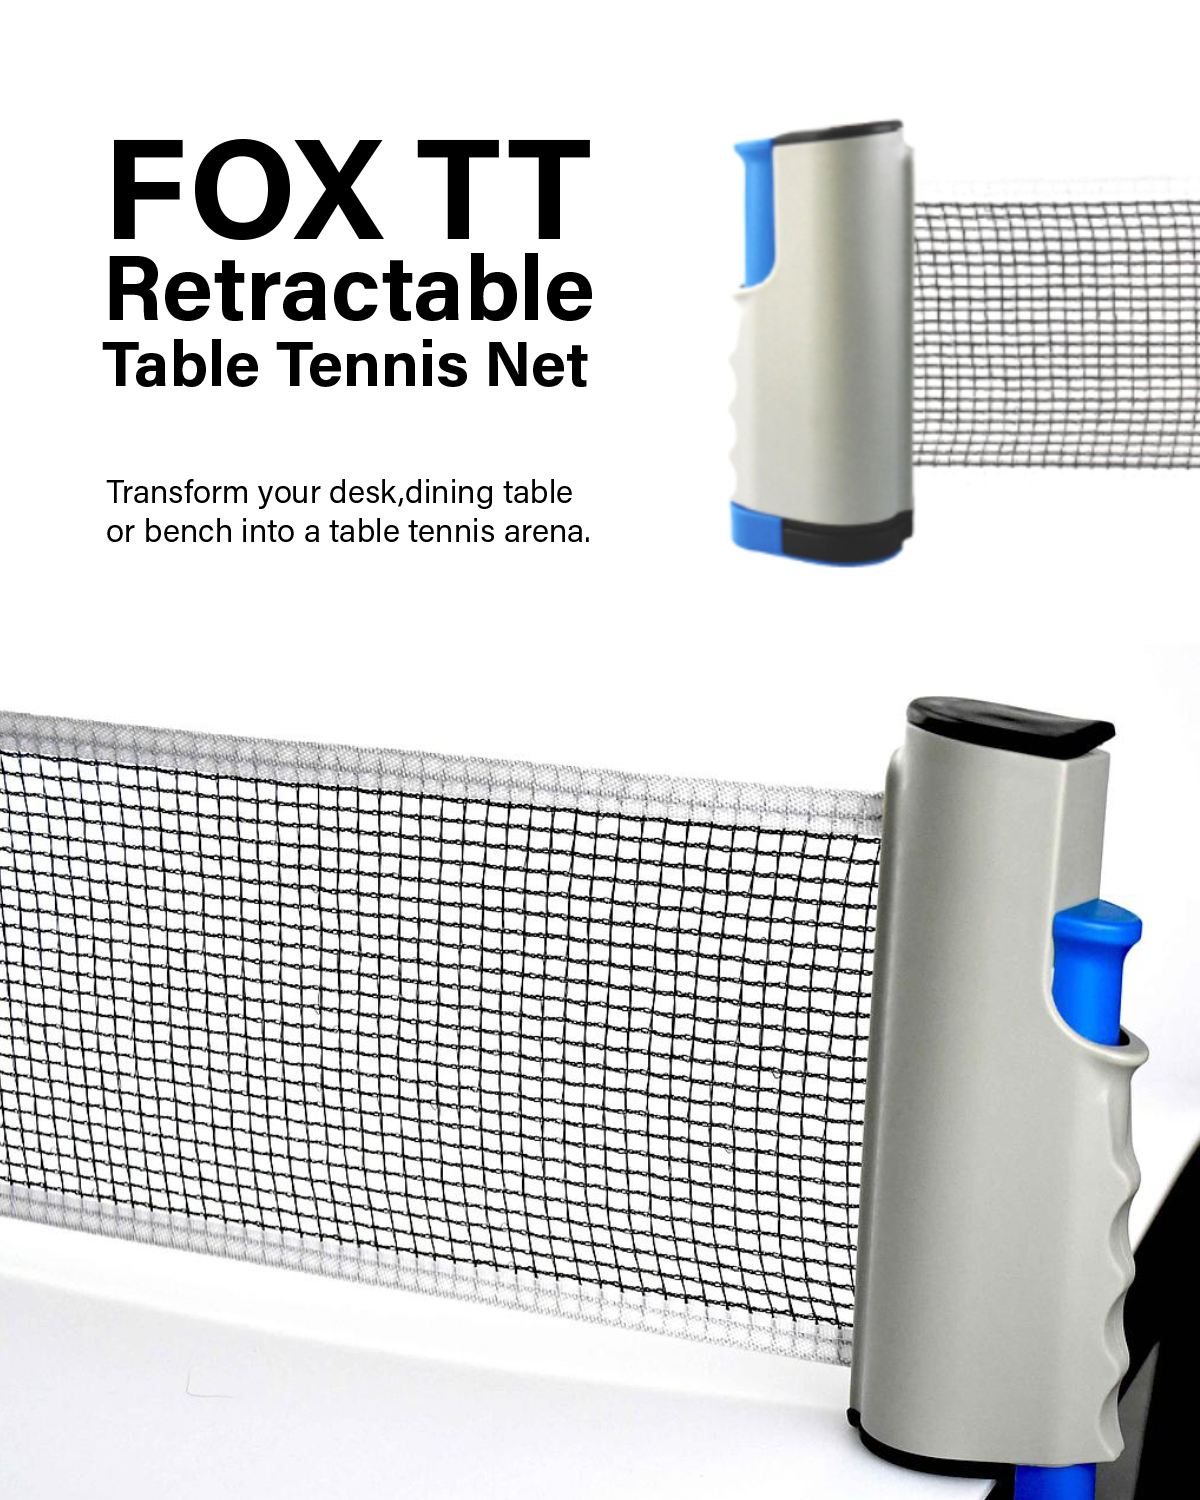 Fox TT Retractable Table Tennis Net